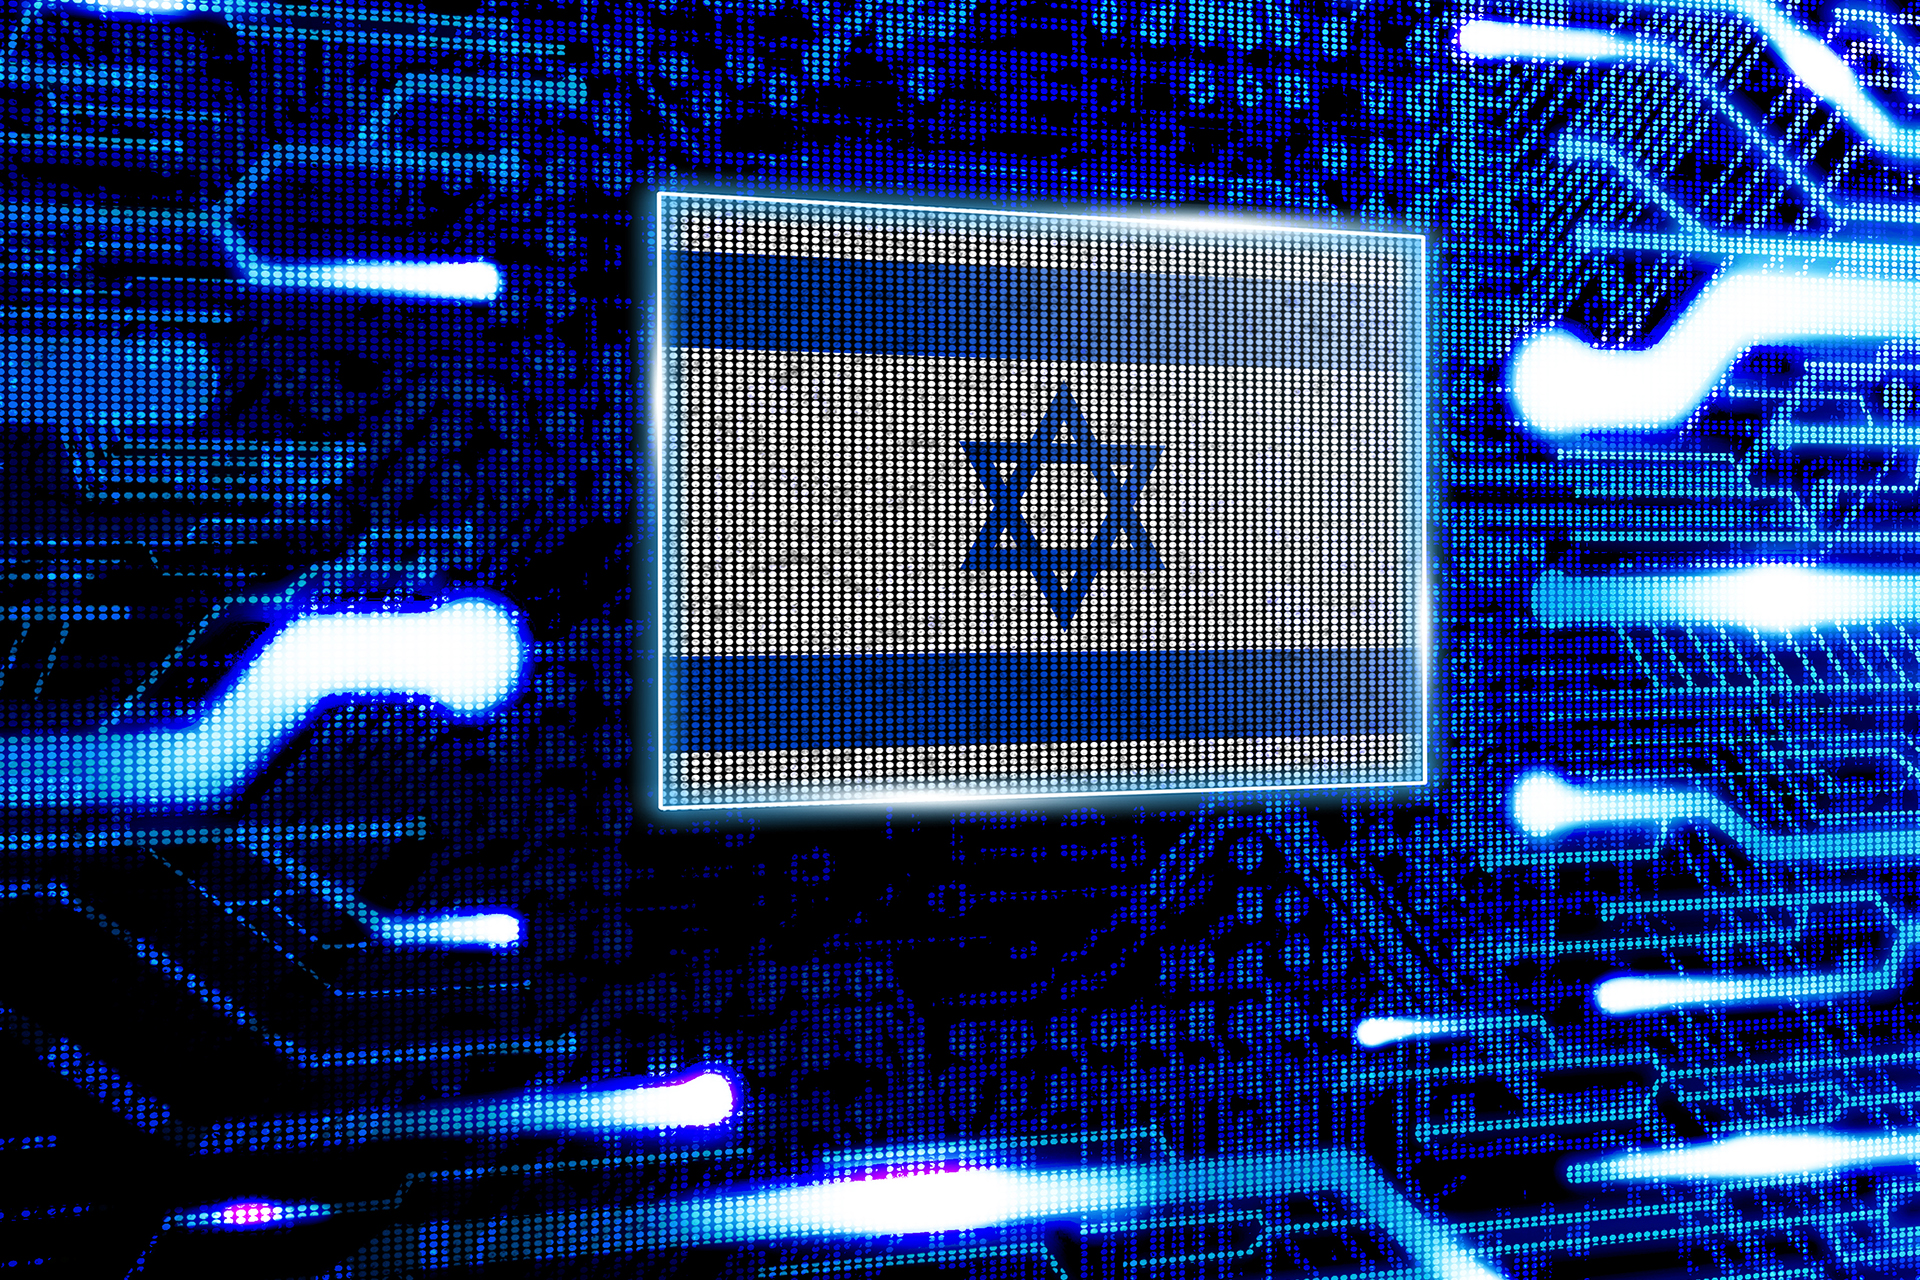 قطاع التكنولوجيا في إسرائيل.. انتعاش هش ومخاطر تلوح في الأفق | اقتصاد – البوكس نيوز